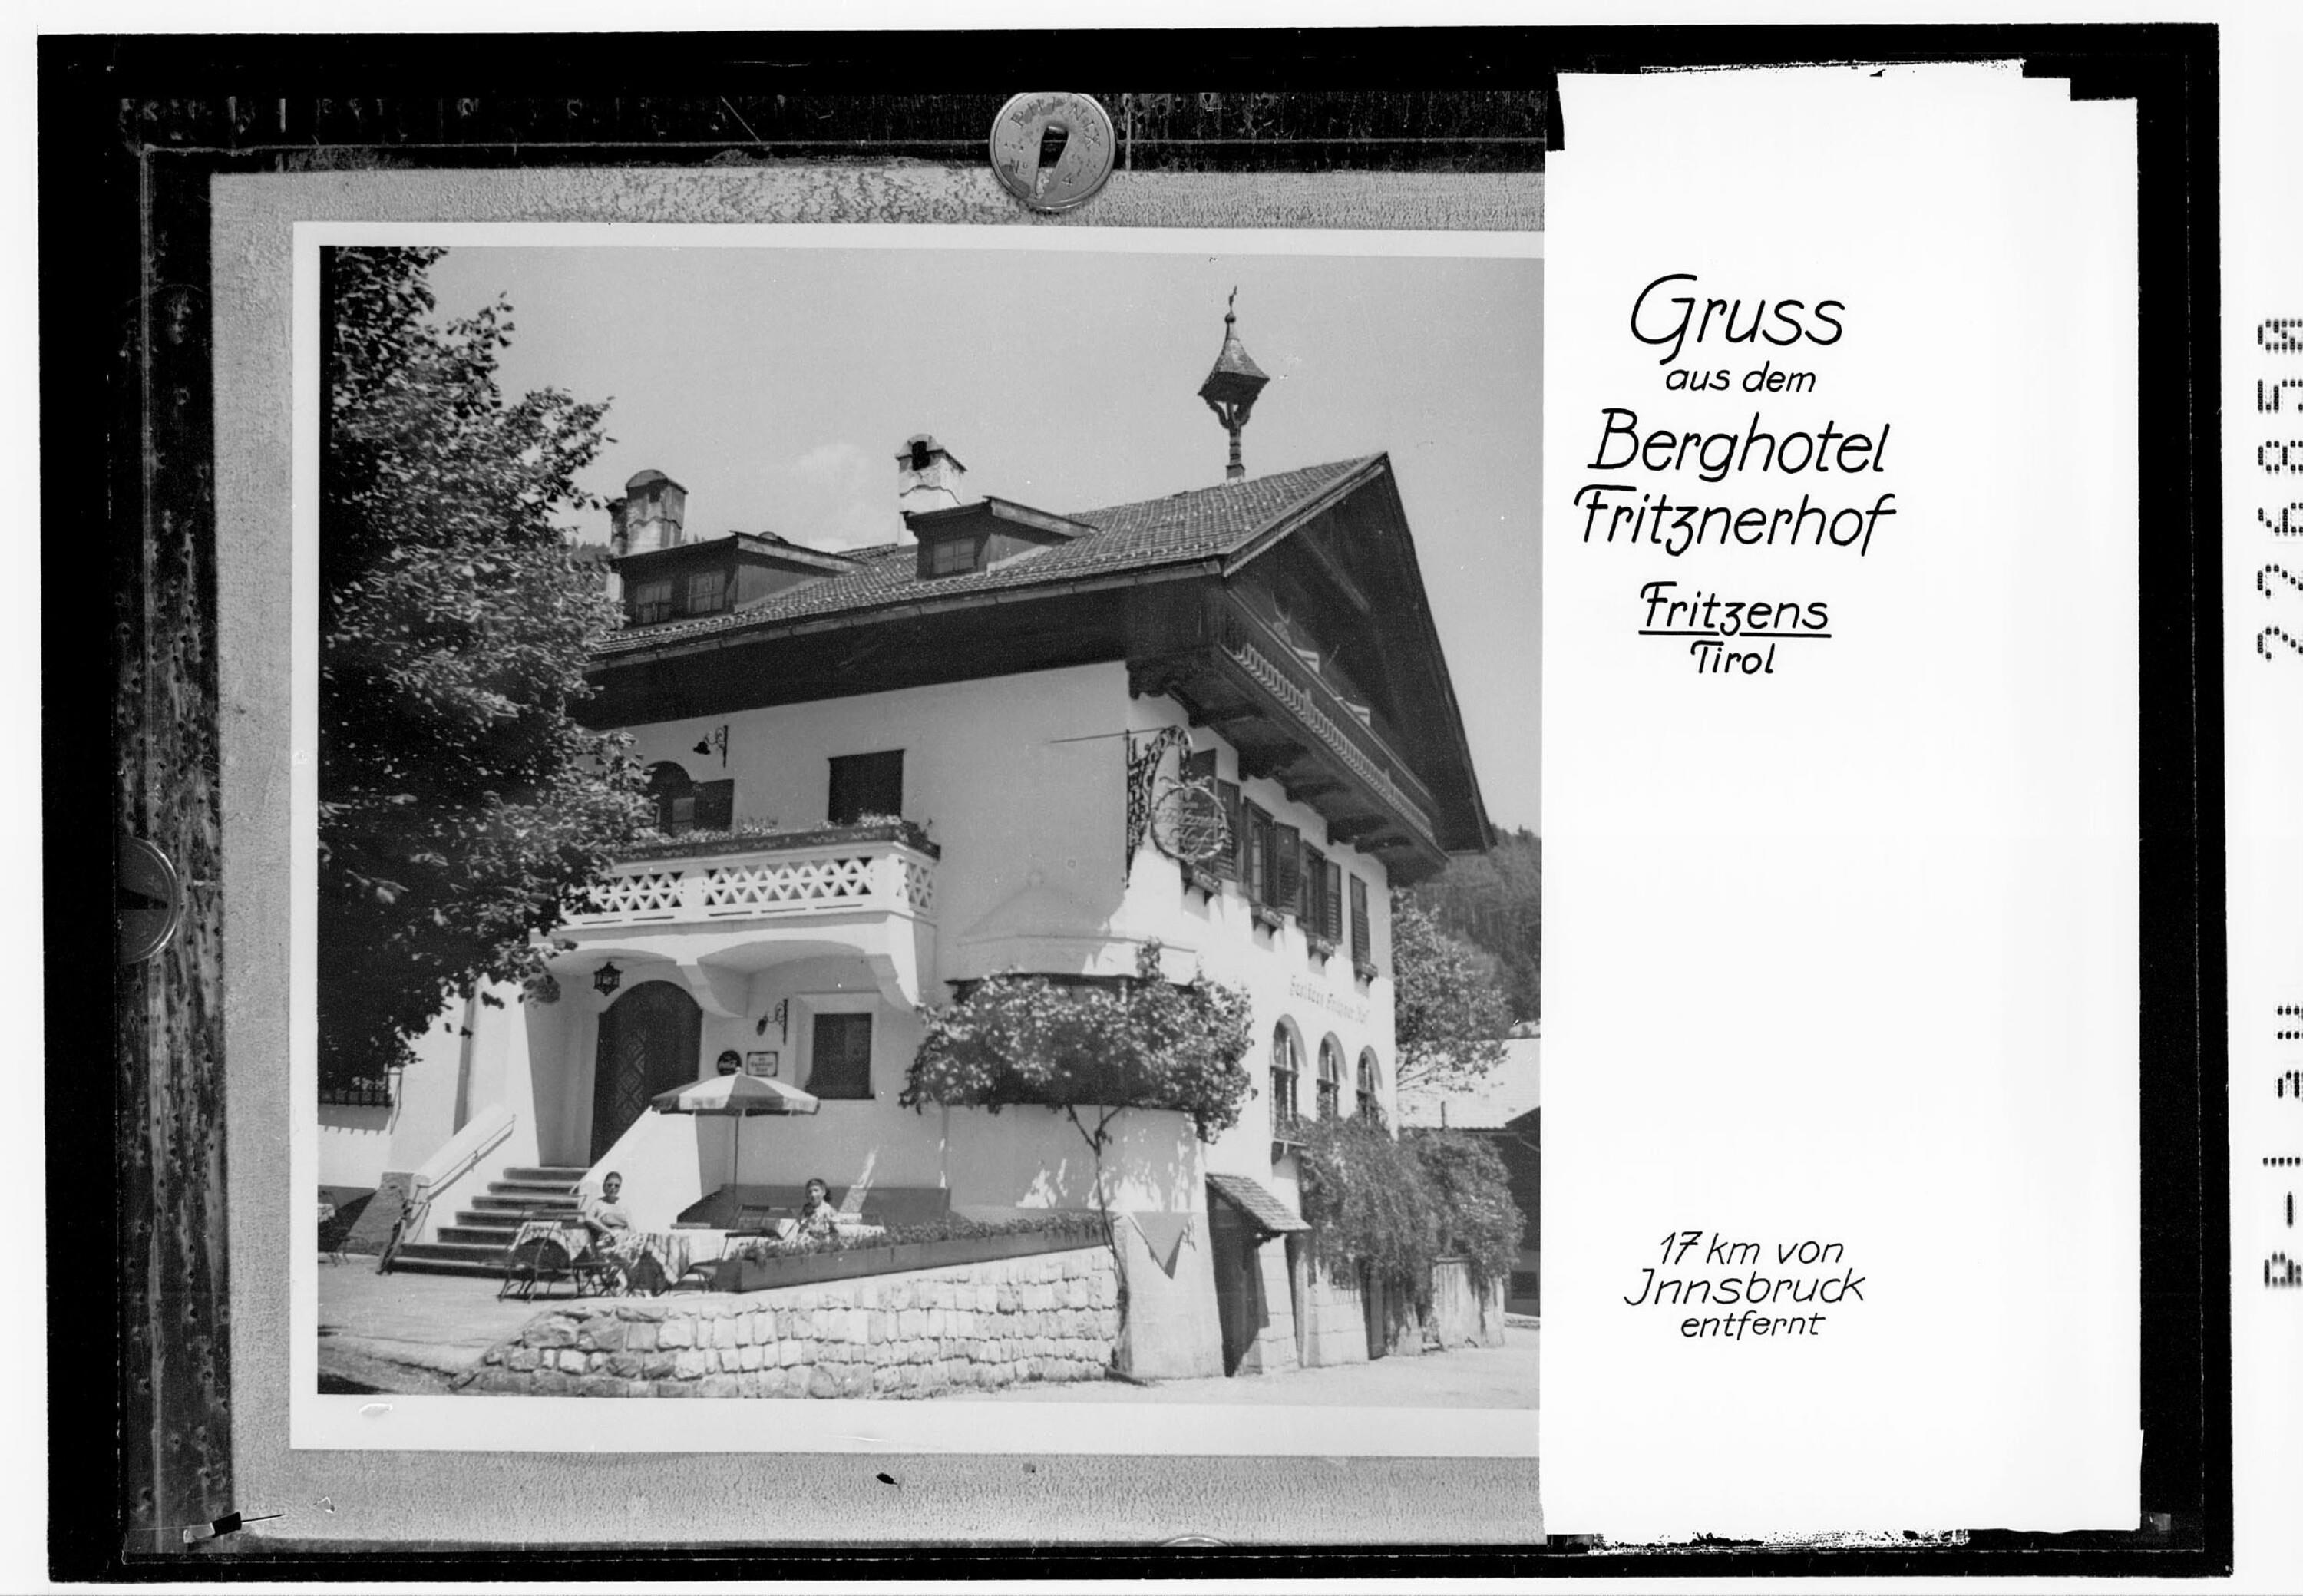 Gruß aus dem Berghotel Fritznerhof / Fritzens / Tirol></div>


    <hr>
    <div class=